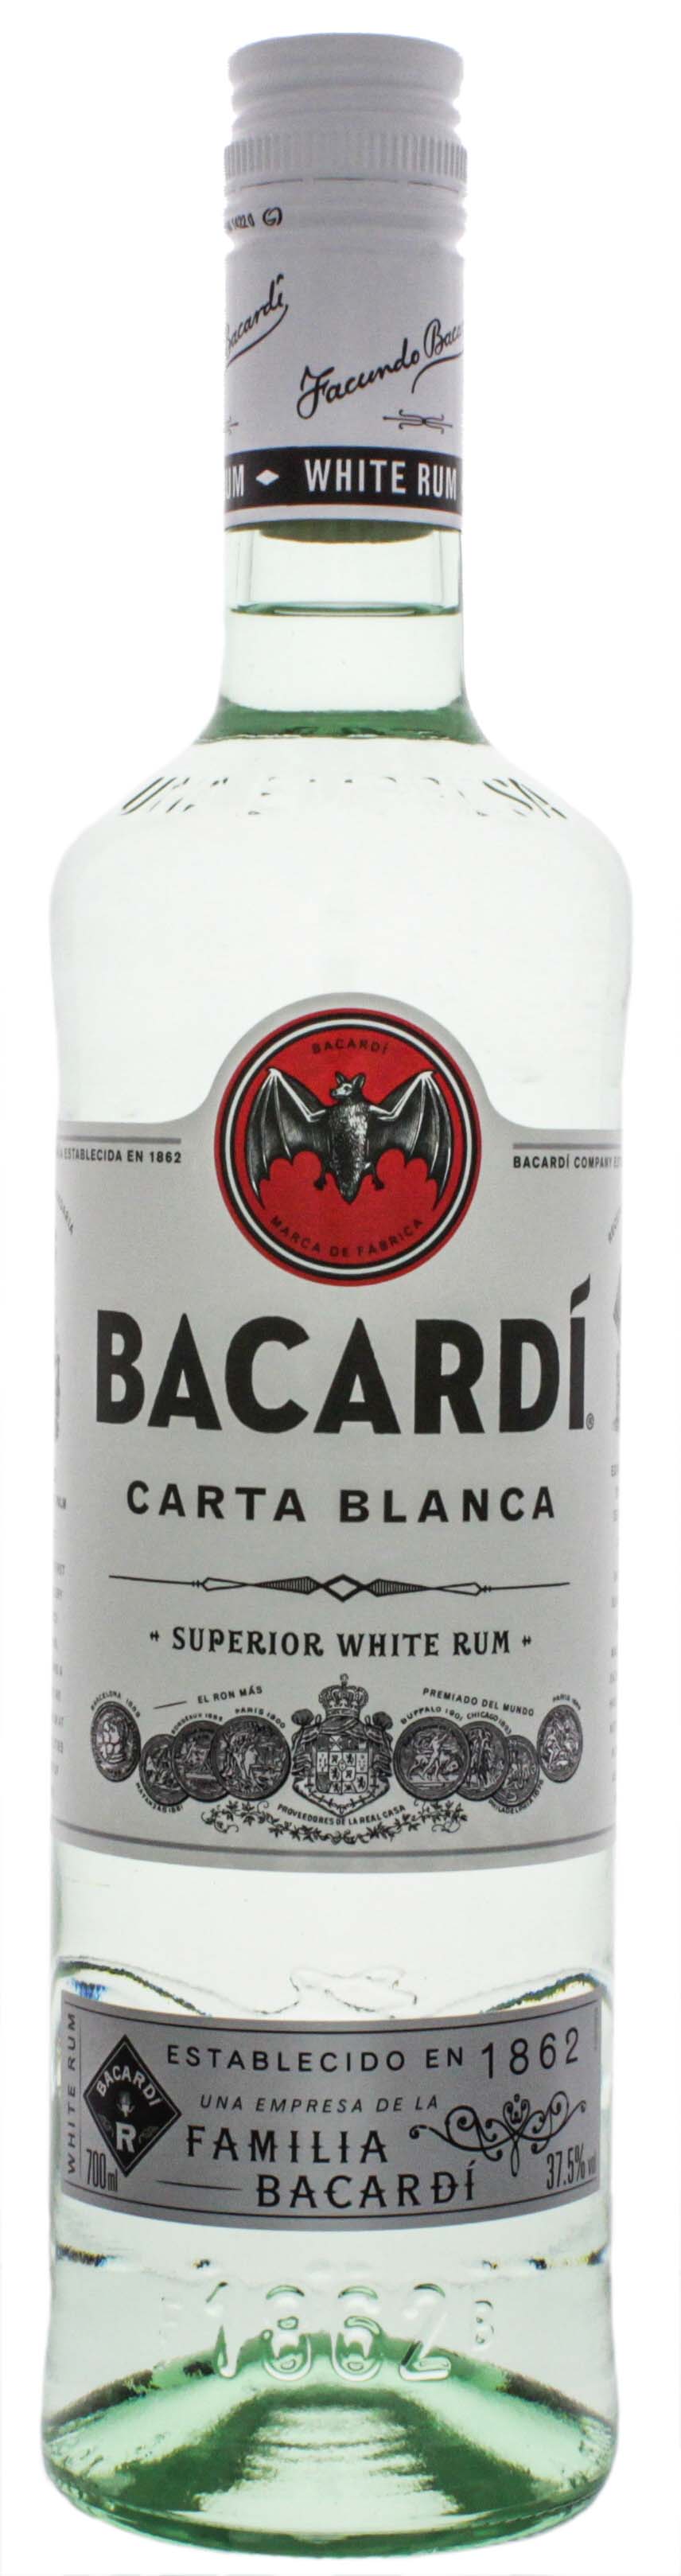 Bacardi Rum Carta Blanca 0,7L jetzt kaufen! Rum Online Shop & Spirituosen | Rum